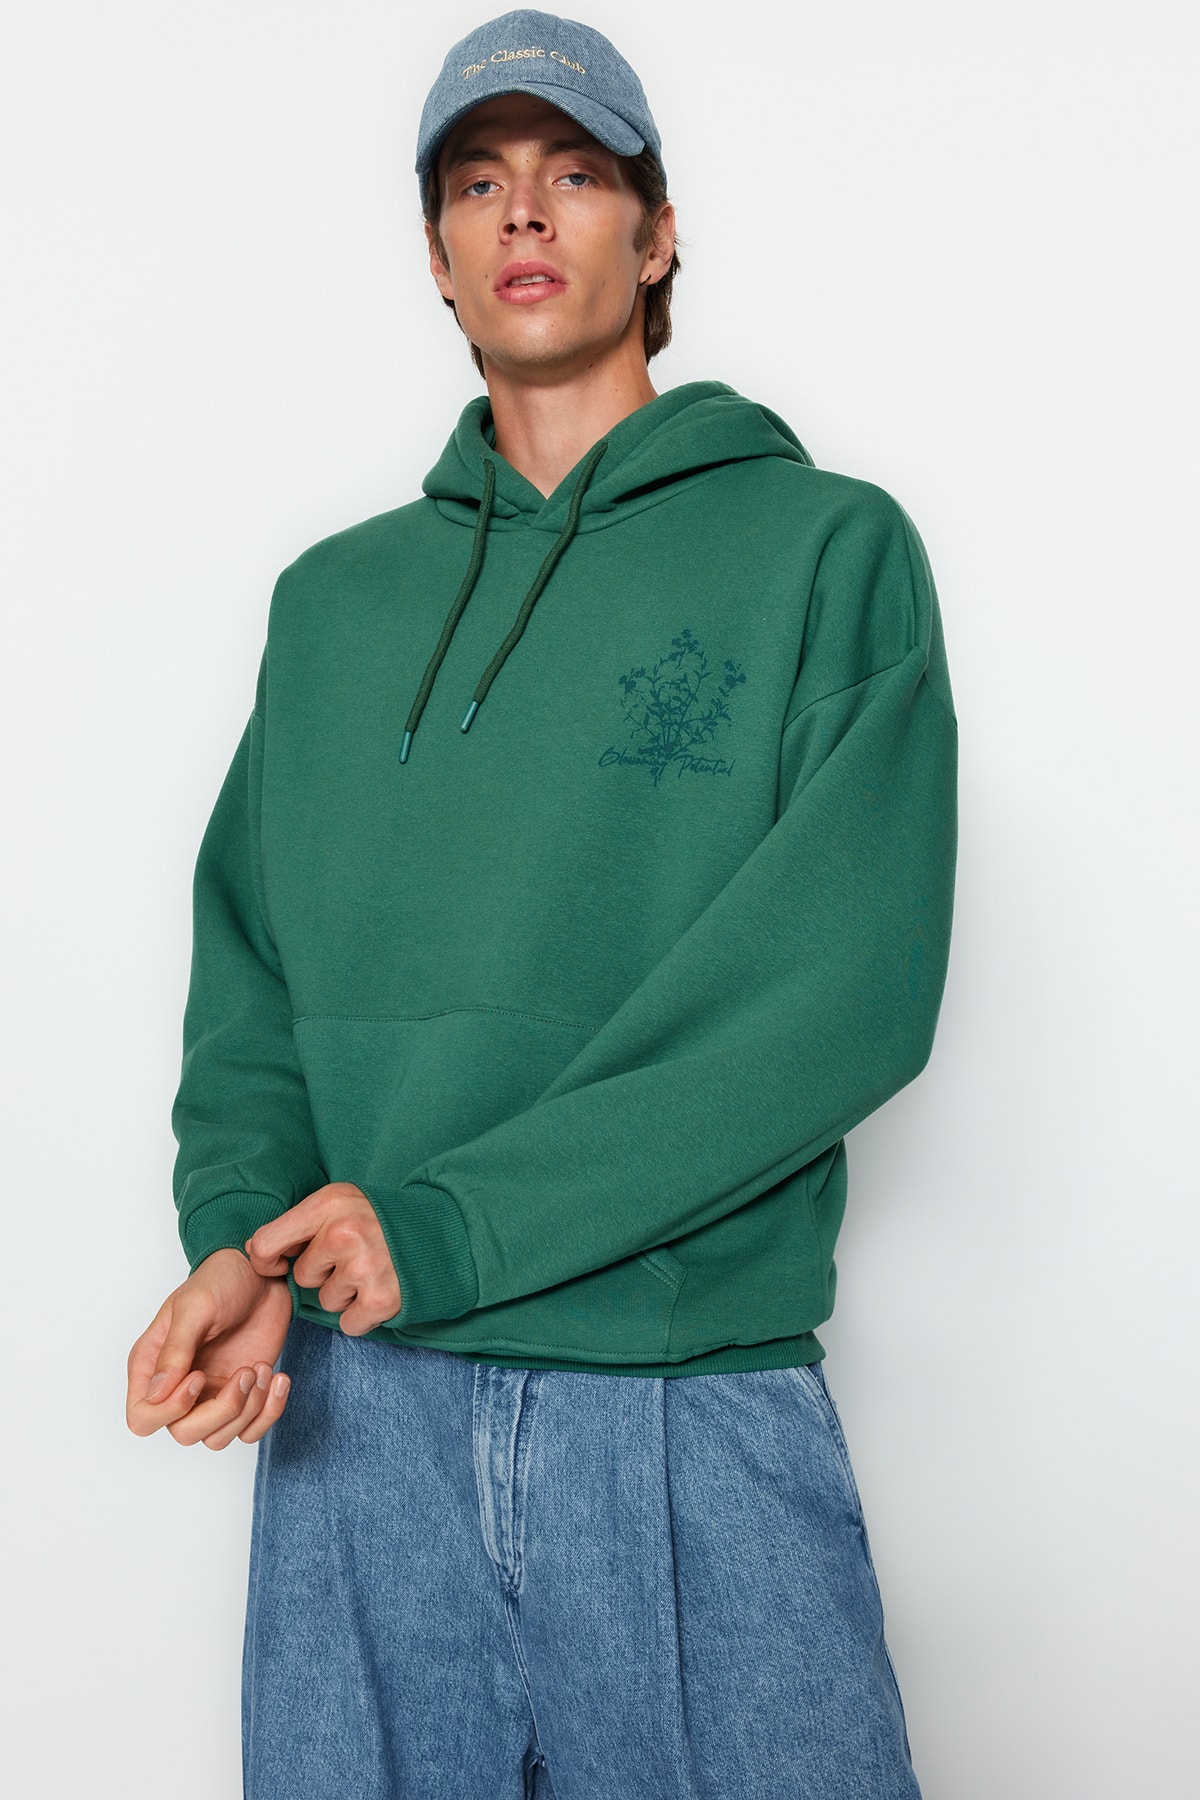 Trendyol Green Men's Oversize/Wide-Cut Hooded Fluffy Floral Printed Fleece Inside Cotton Sweatshirt.